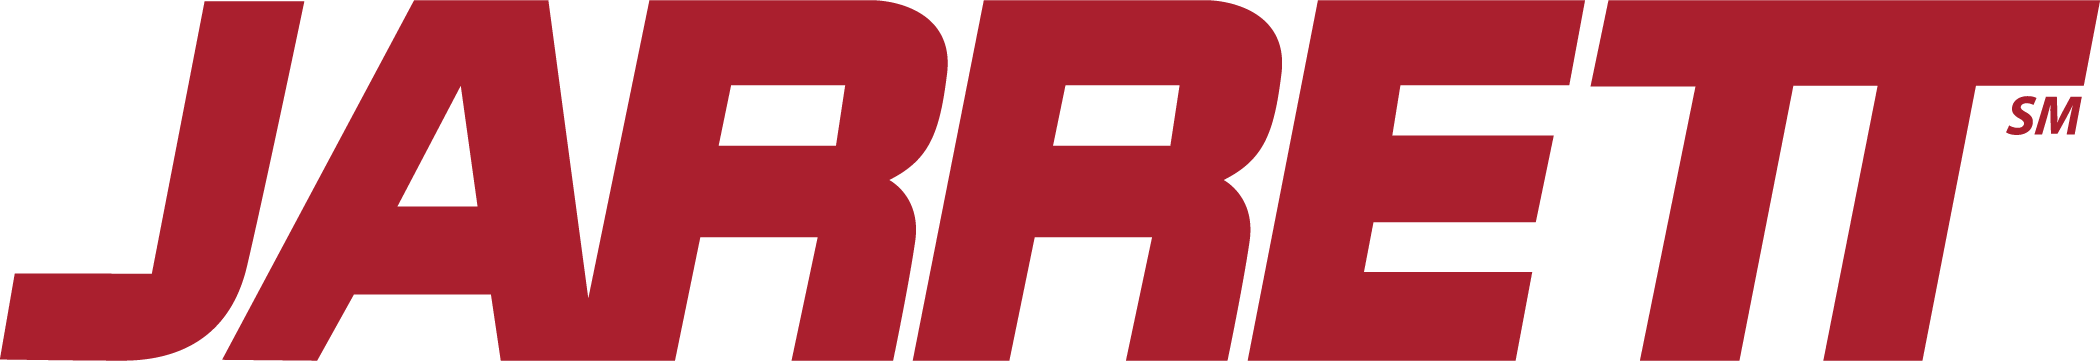 Jarrett logo